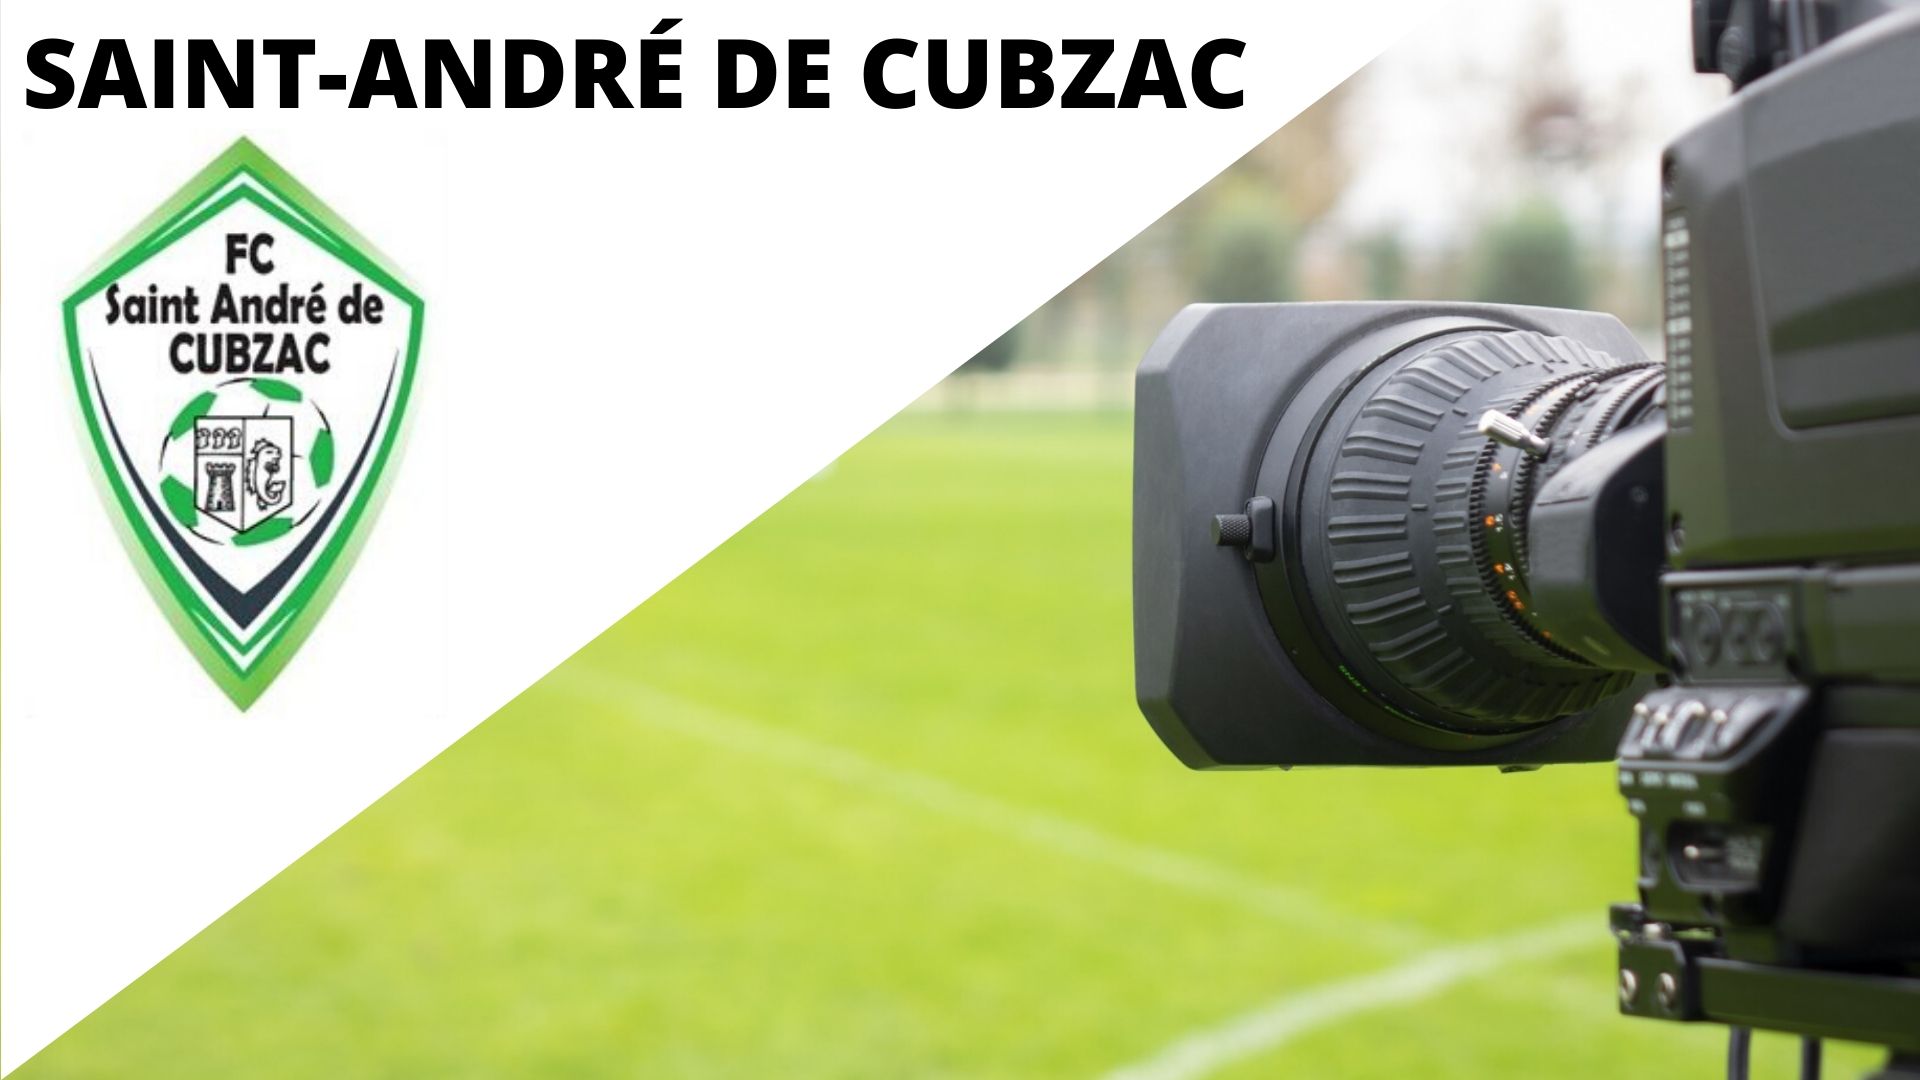 SAINT-ANDRE-DE-CUBZAC-FC-33-1